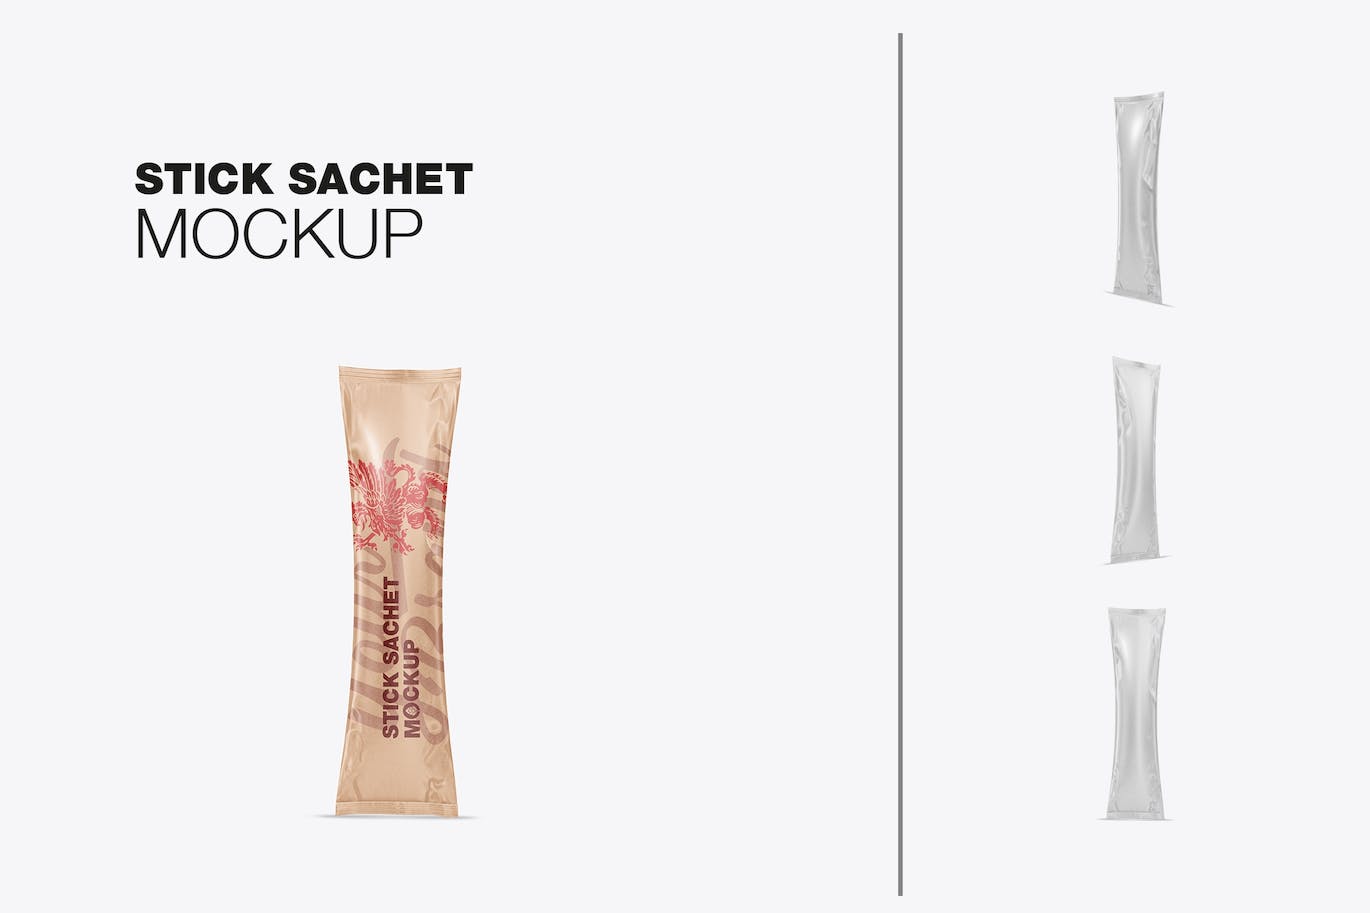 牛皮纸小袋包装设计样机图 Pack Kraft Stick Sachets Mockup 样机素材 第1张